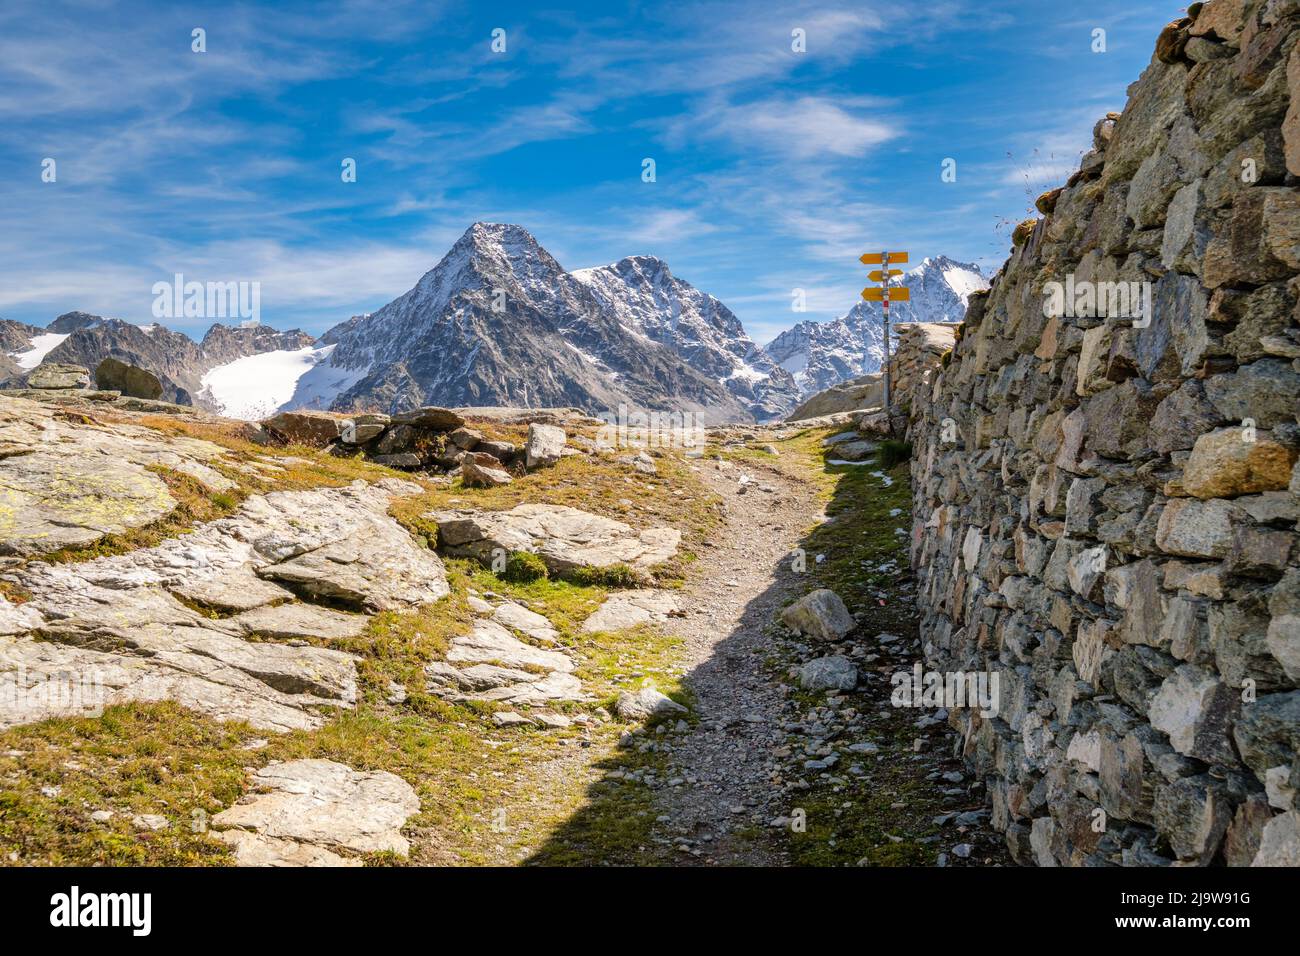 Fuorcla Surlej ist ein Bergpass in den Schweizer Alpen (der das obere Engadine-Tal mit dem Roseg-Tal verbindet) mit atemberaubendem Blick auf das Bernina-Massiv Stockfoto